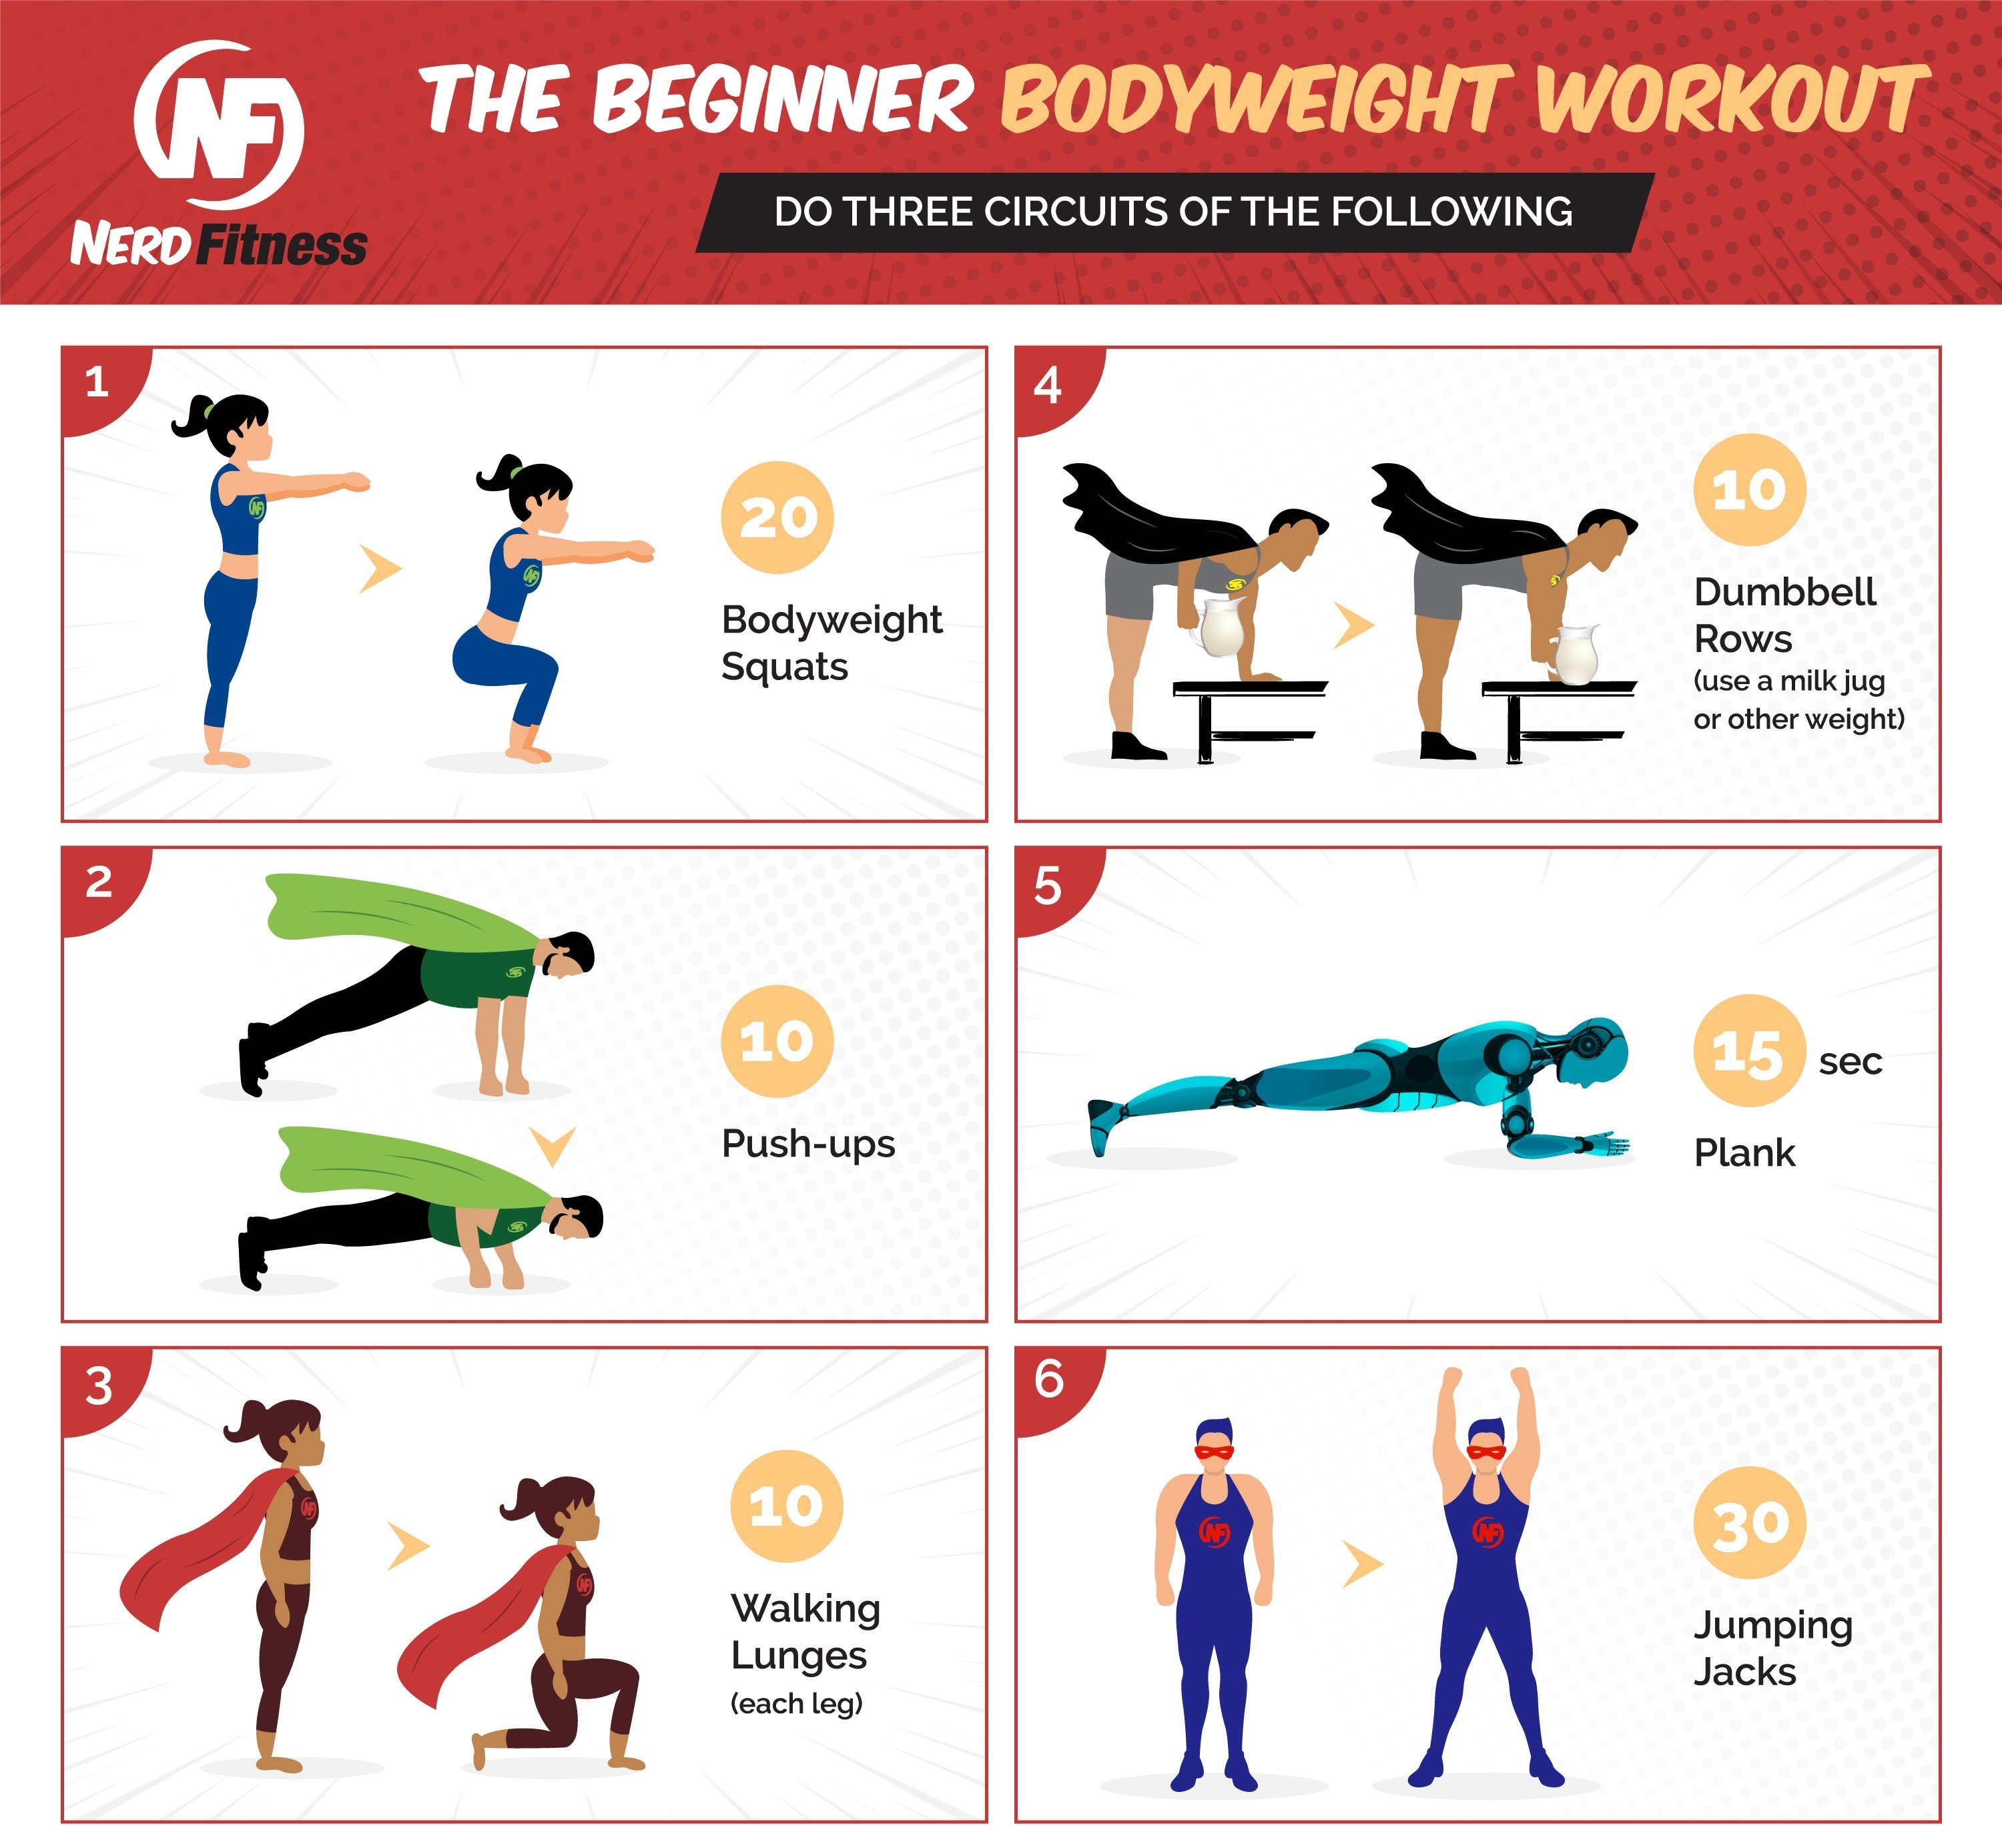 II. Benefits of Bodyweight Exercises